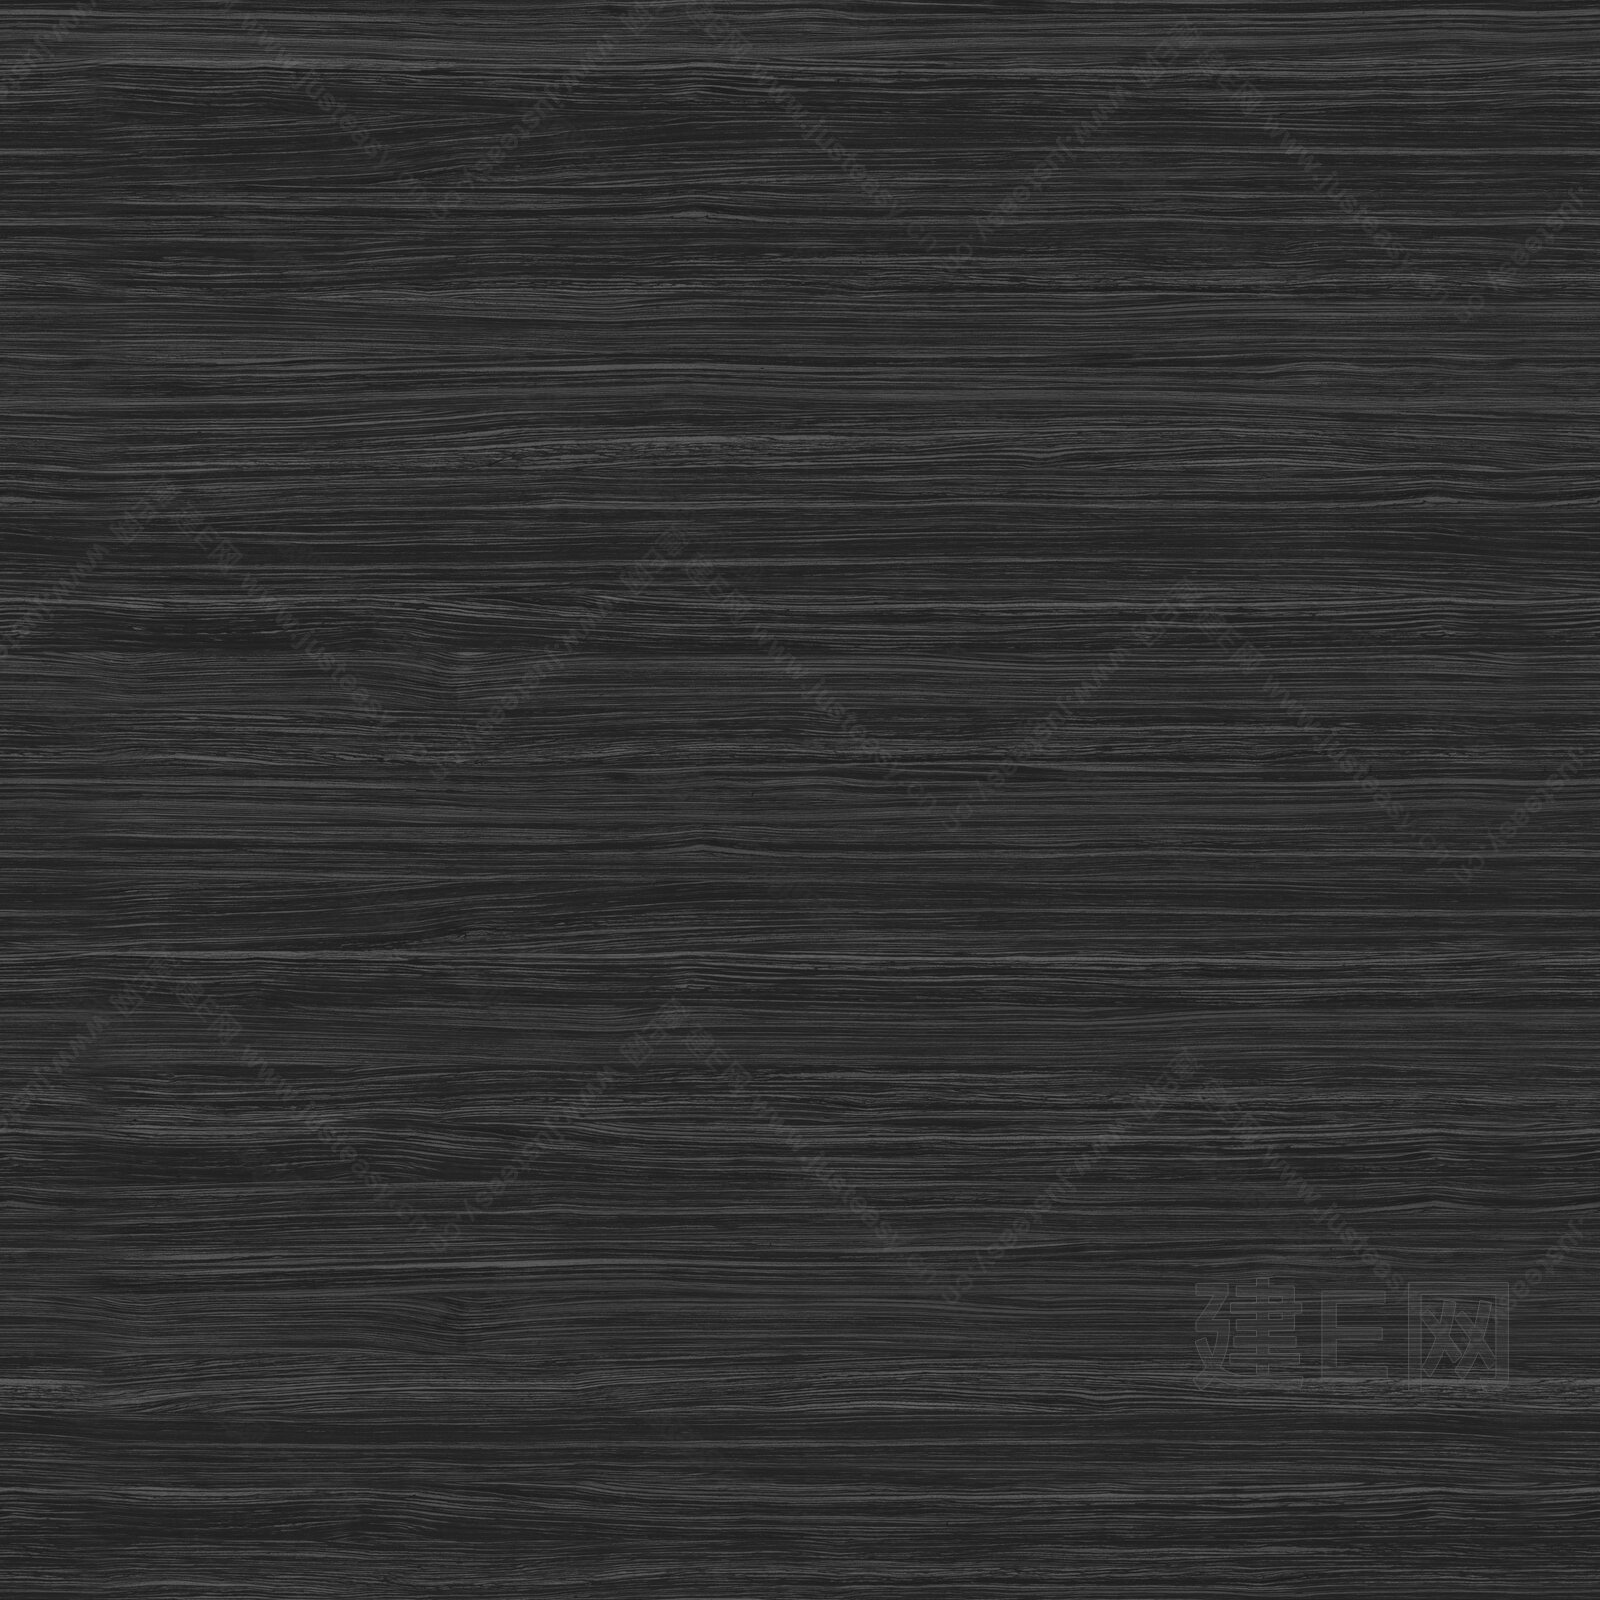 黑色纯色木板纹理背景素材免费下载 - 觅知网